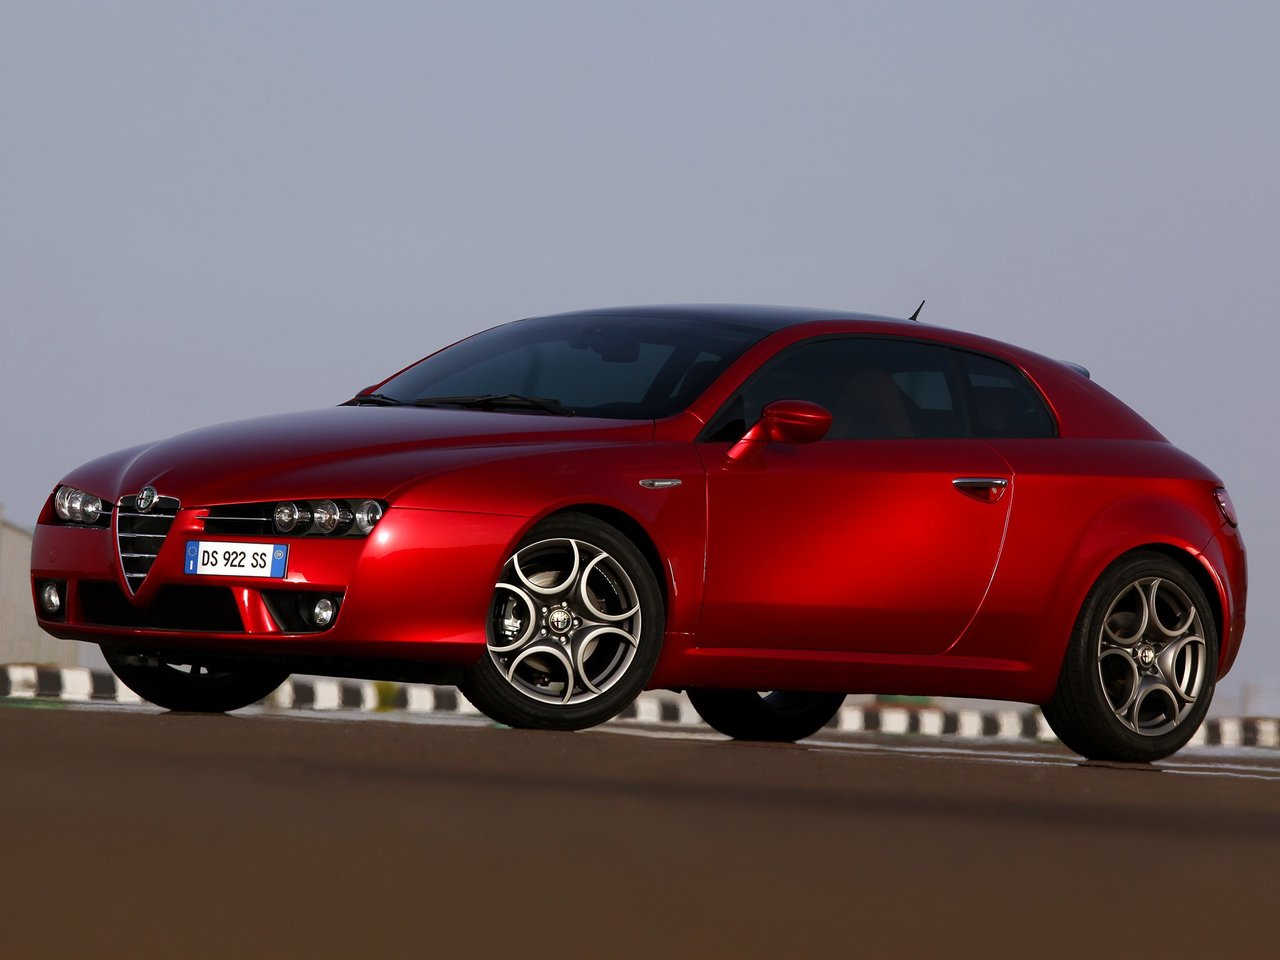 Расход газа четырёх комплектаций хэтчбека три двери Alfa Romeo Brera. Разница стоимости заправки газом и бензином. Автономный пробег до и после установки ГБО.